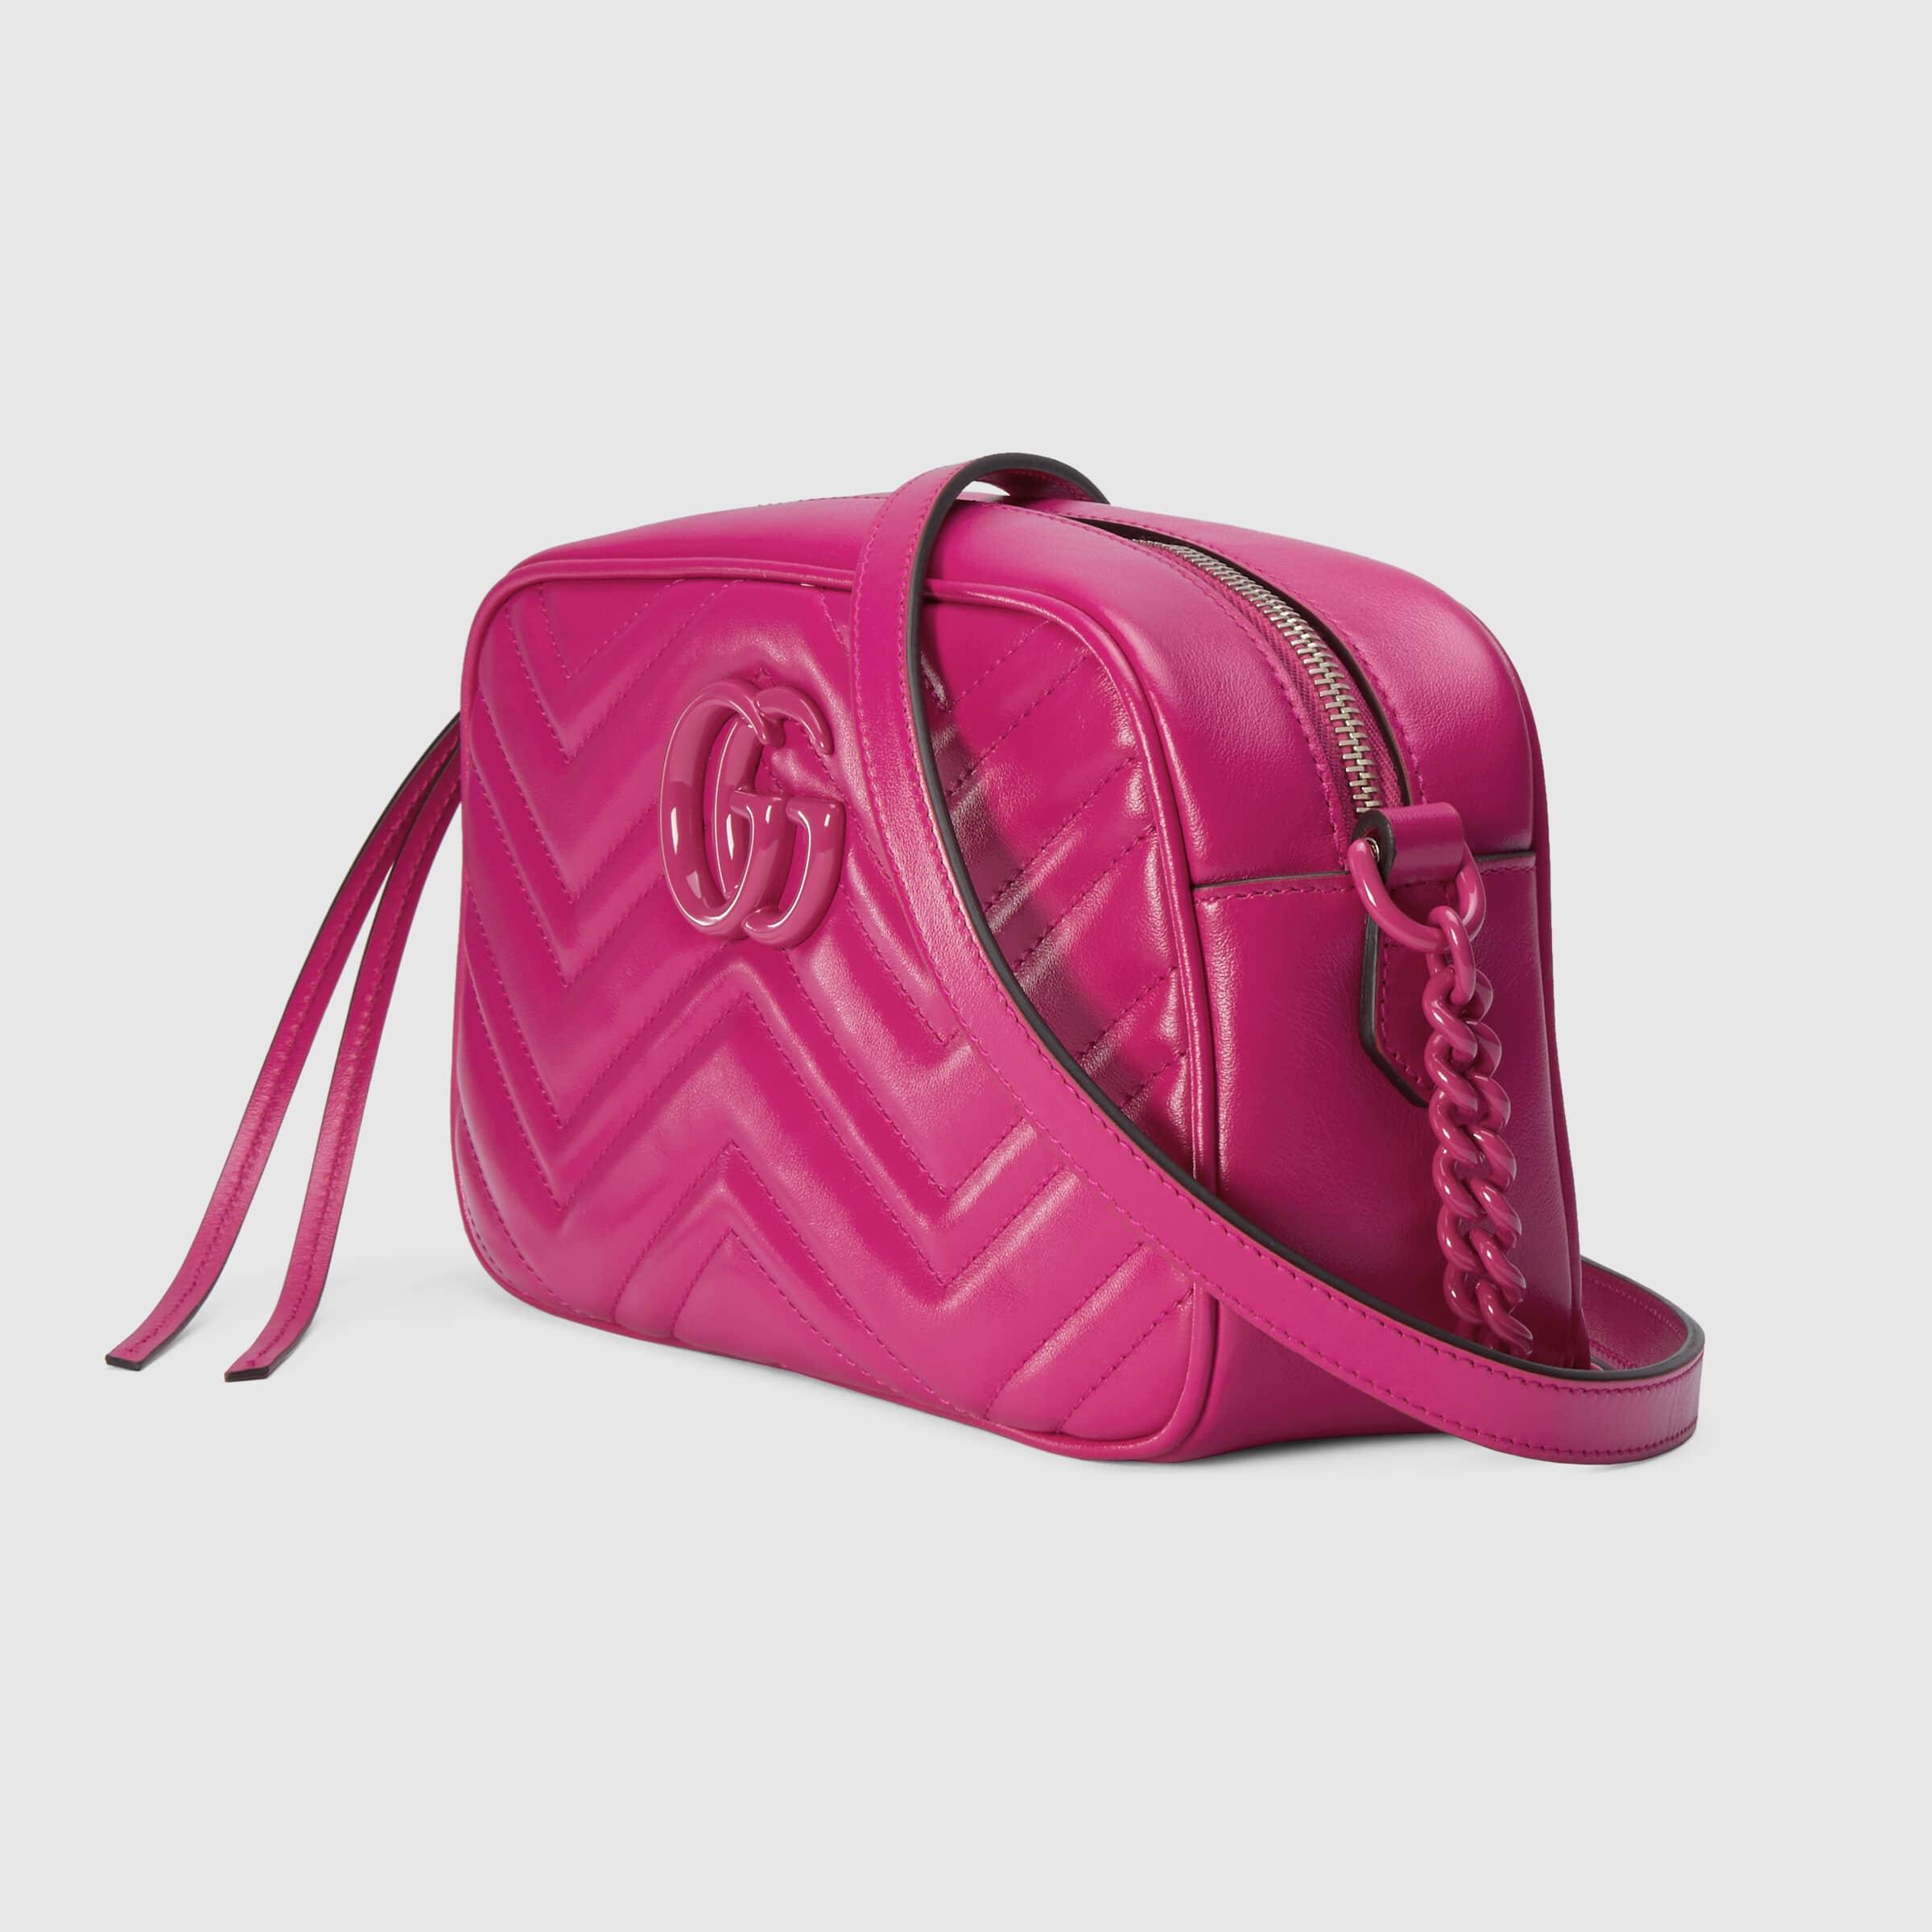 Pink Leather Marmont Matelassé Shoulder Bag Small